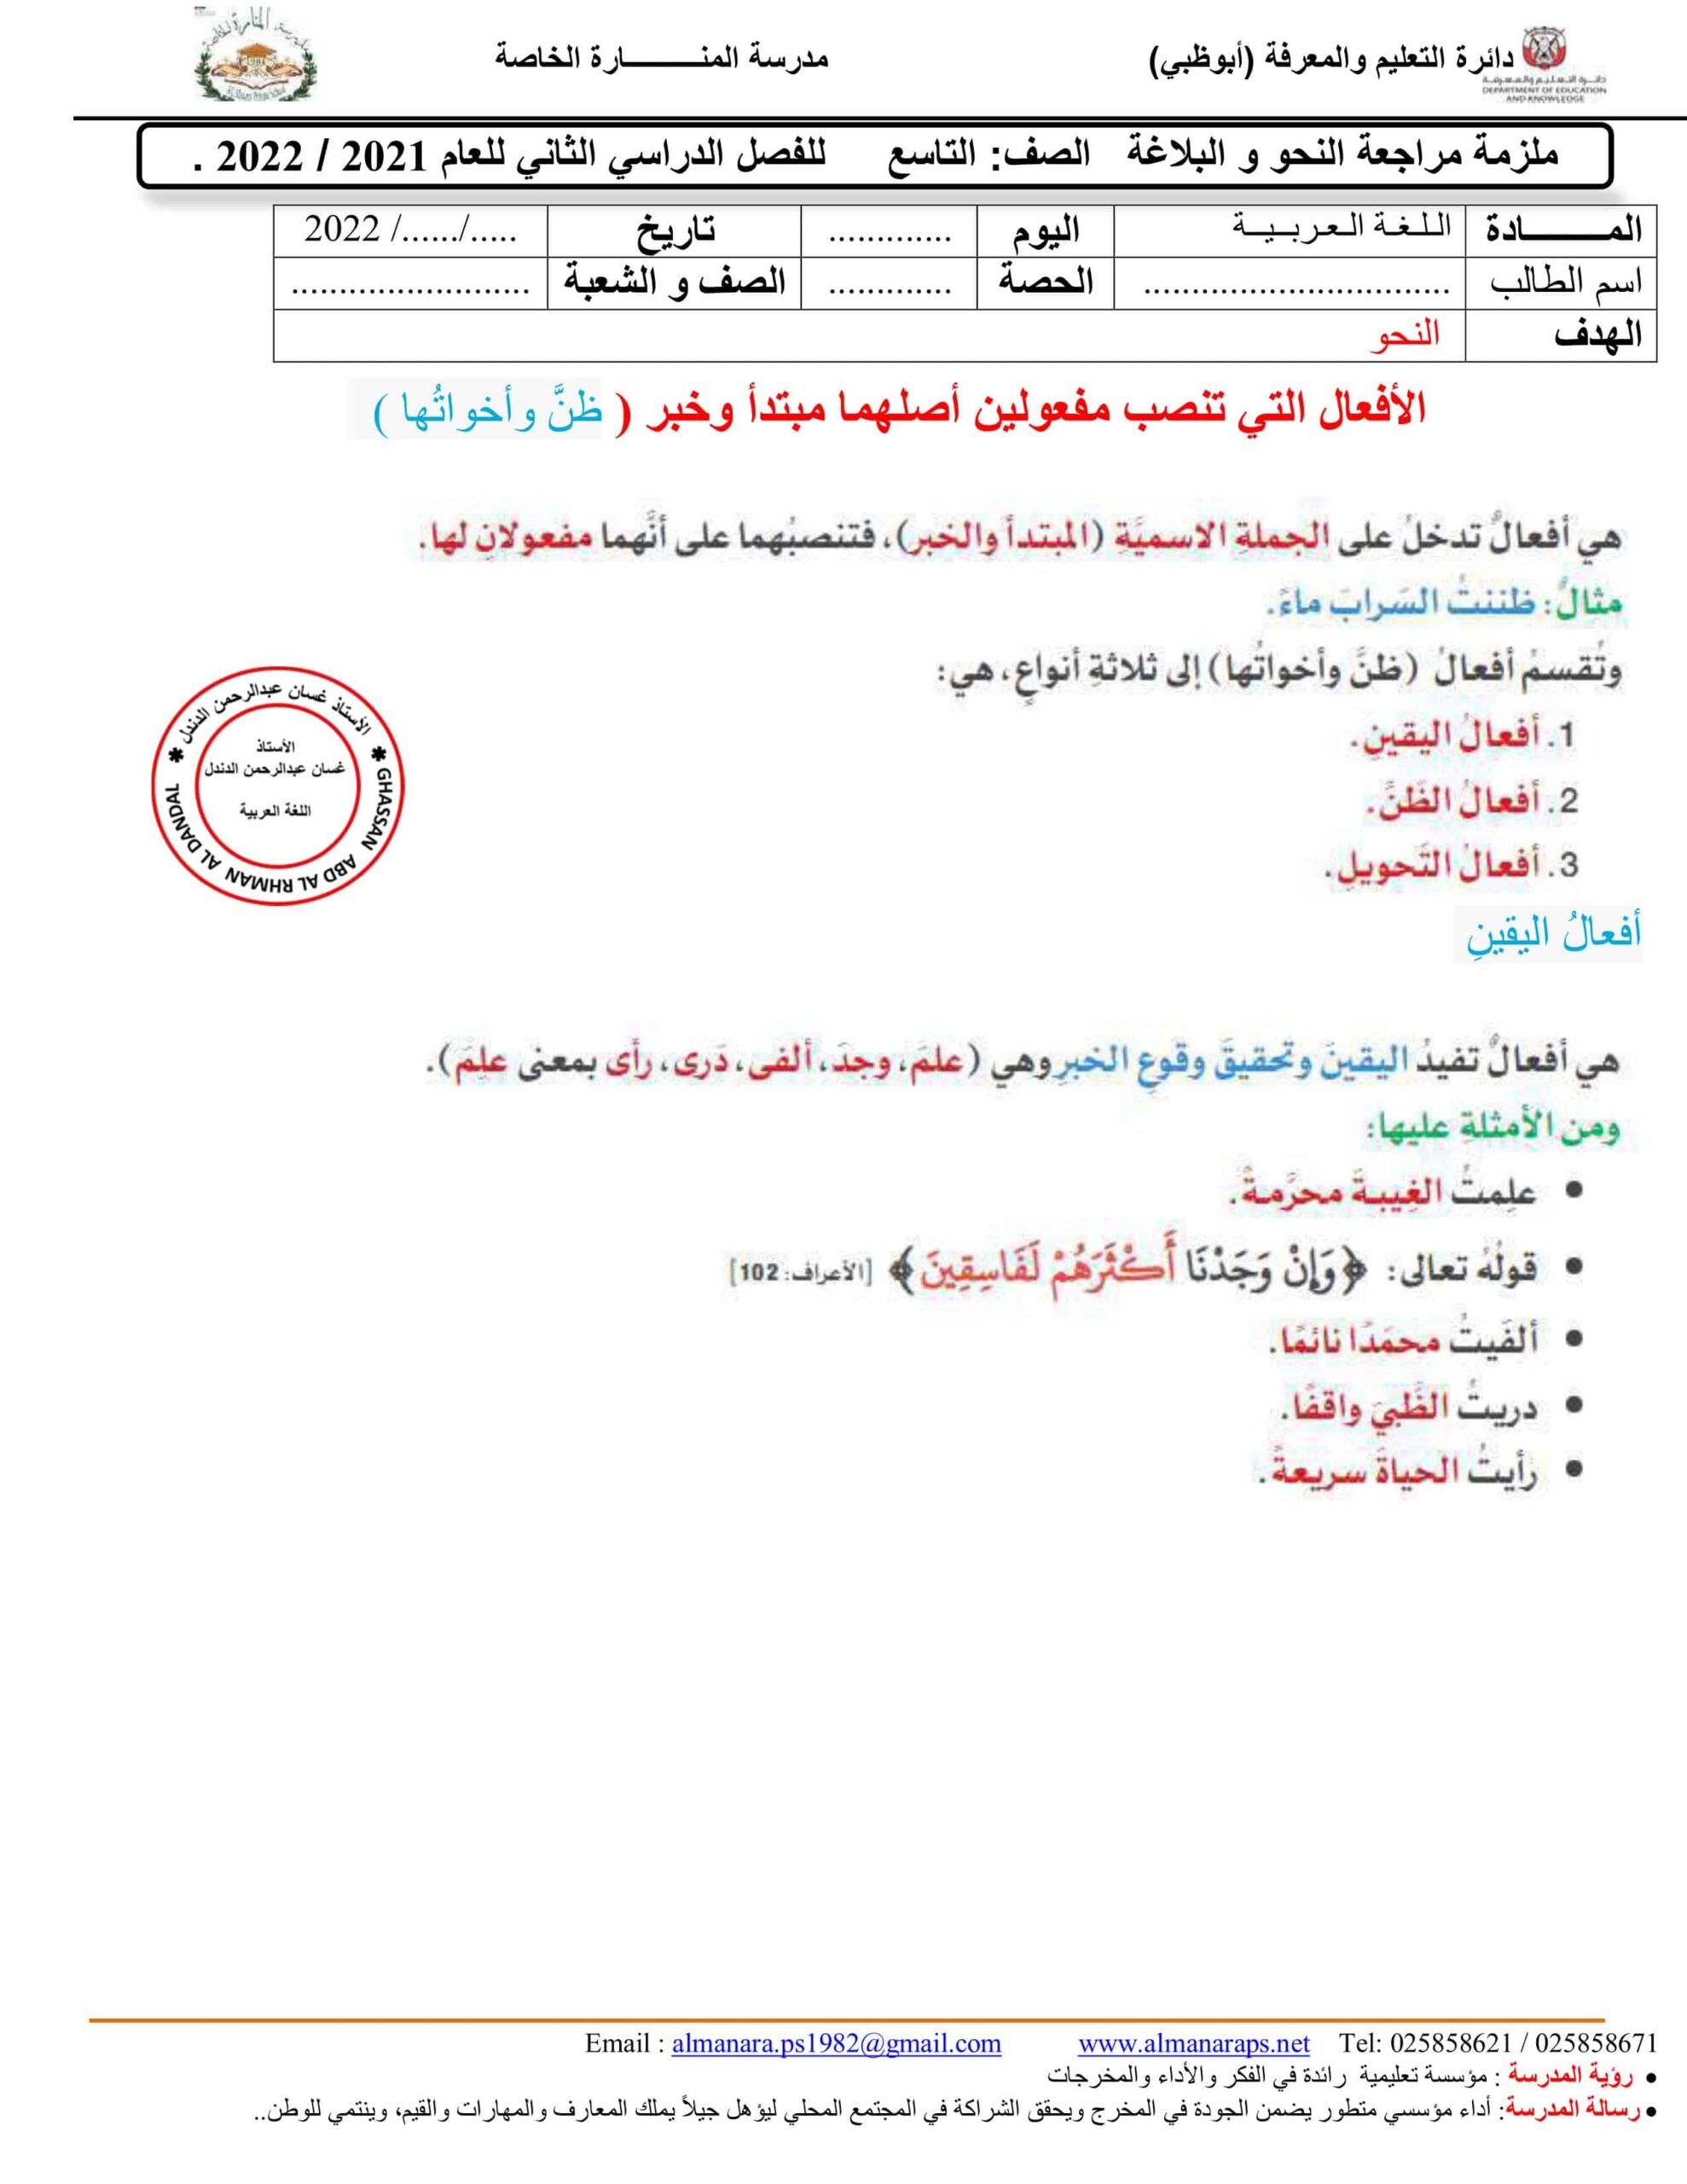 ملزمة مراجعة النحو والبلاغة اللغة العربية الصف التاسع